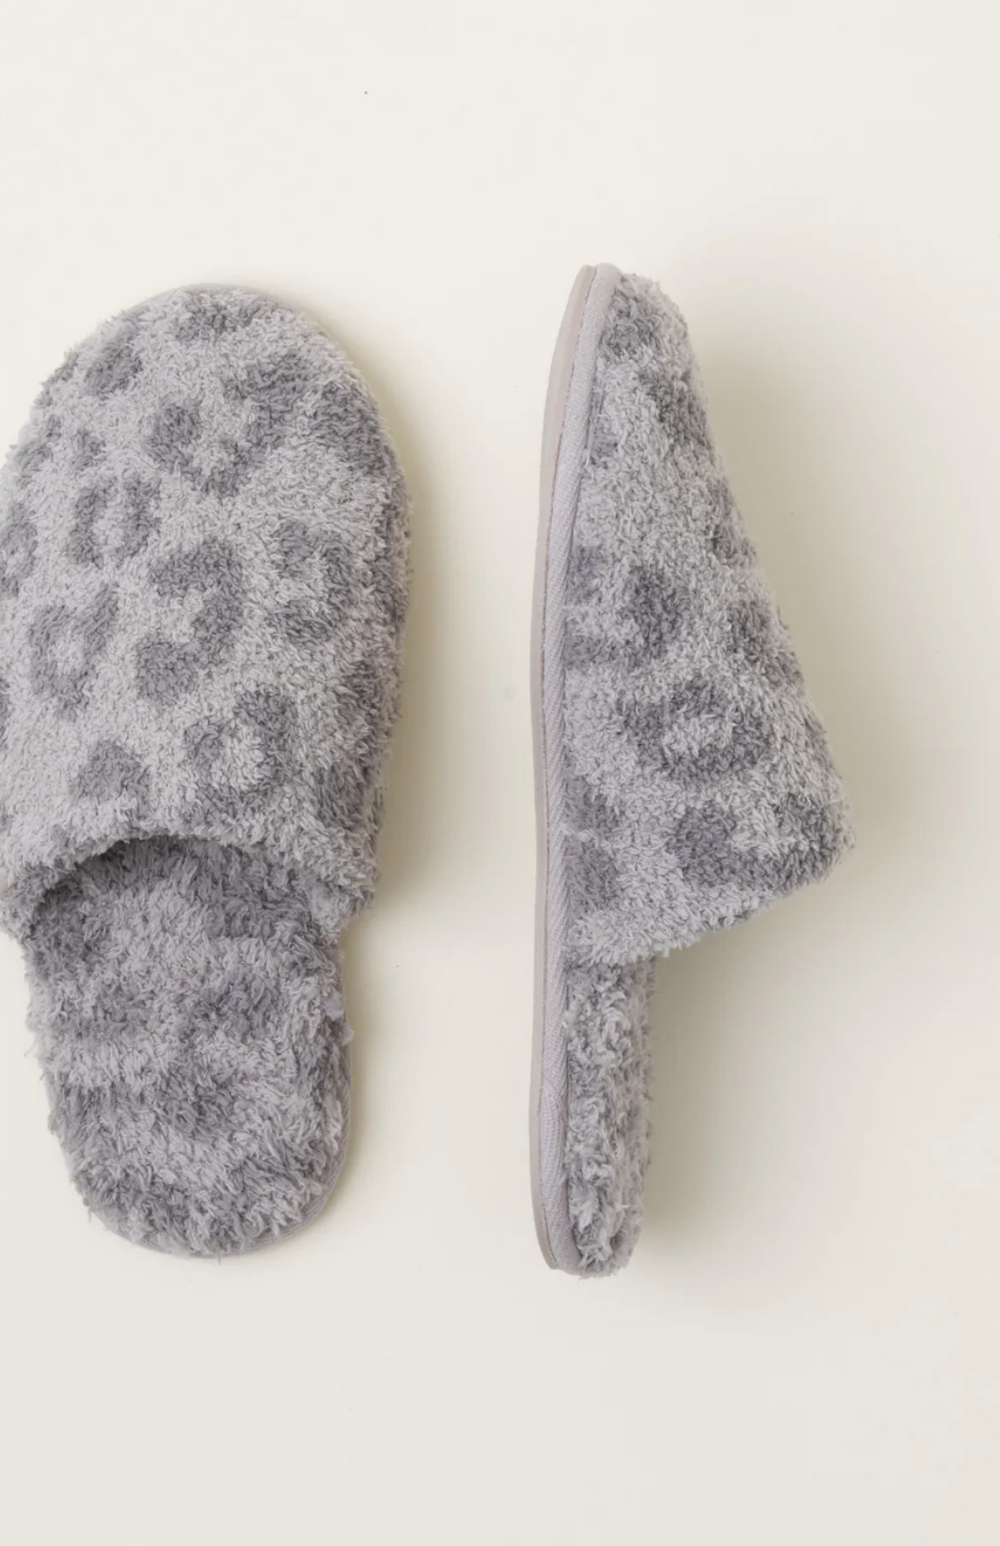 Barefoot Dreams Women's Ankle Socks Aspen - Almond – Presence of